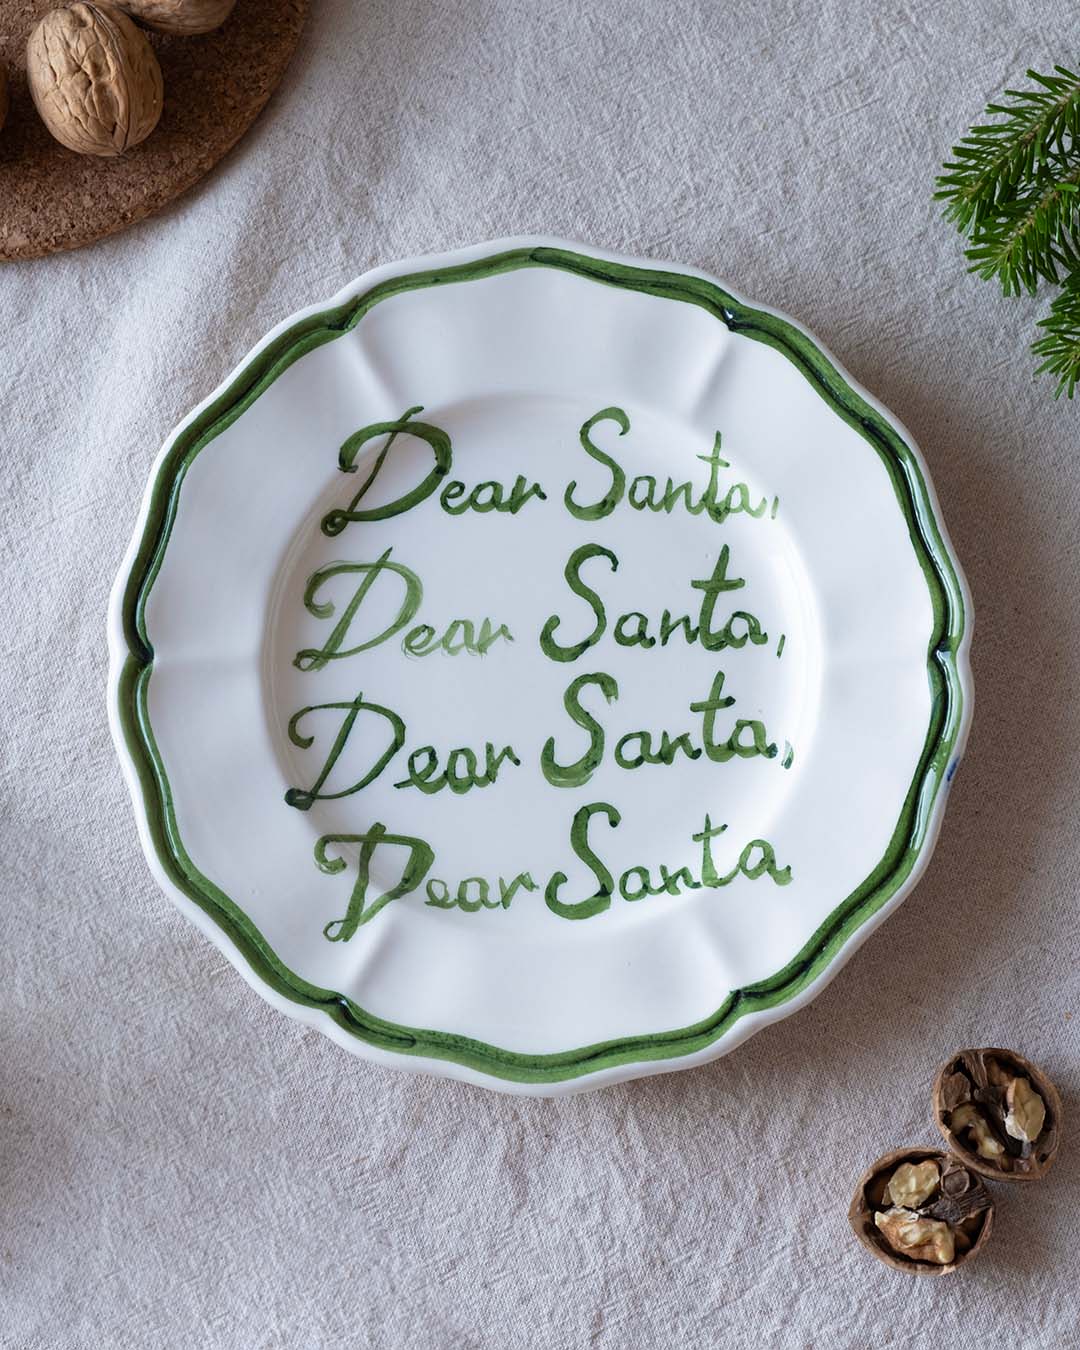 "Dear Santa, Dear Santa" plate